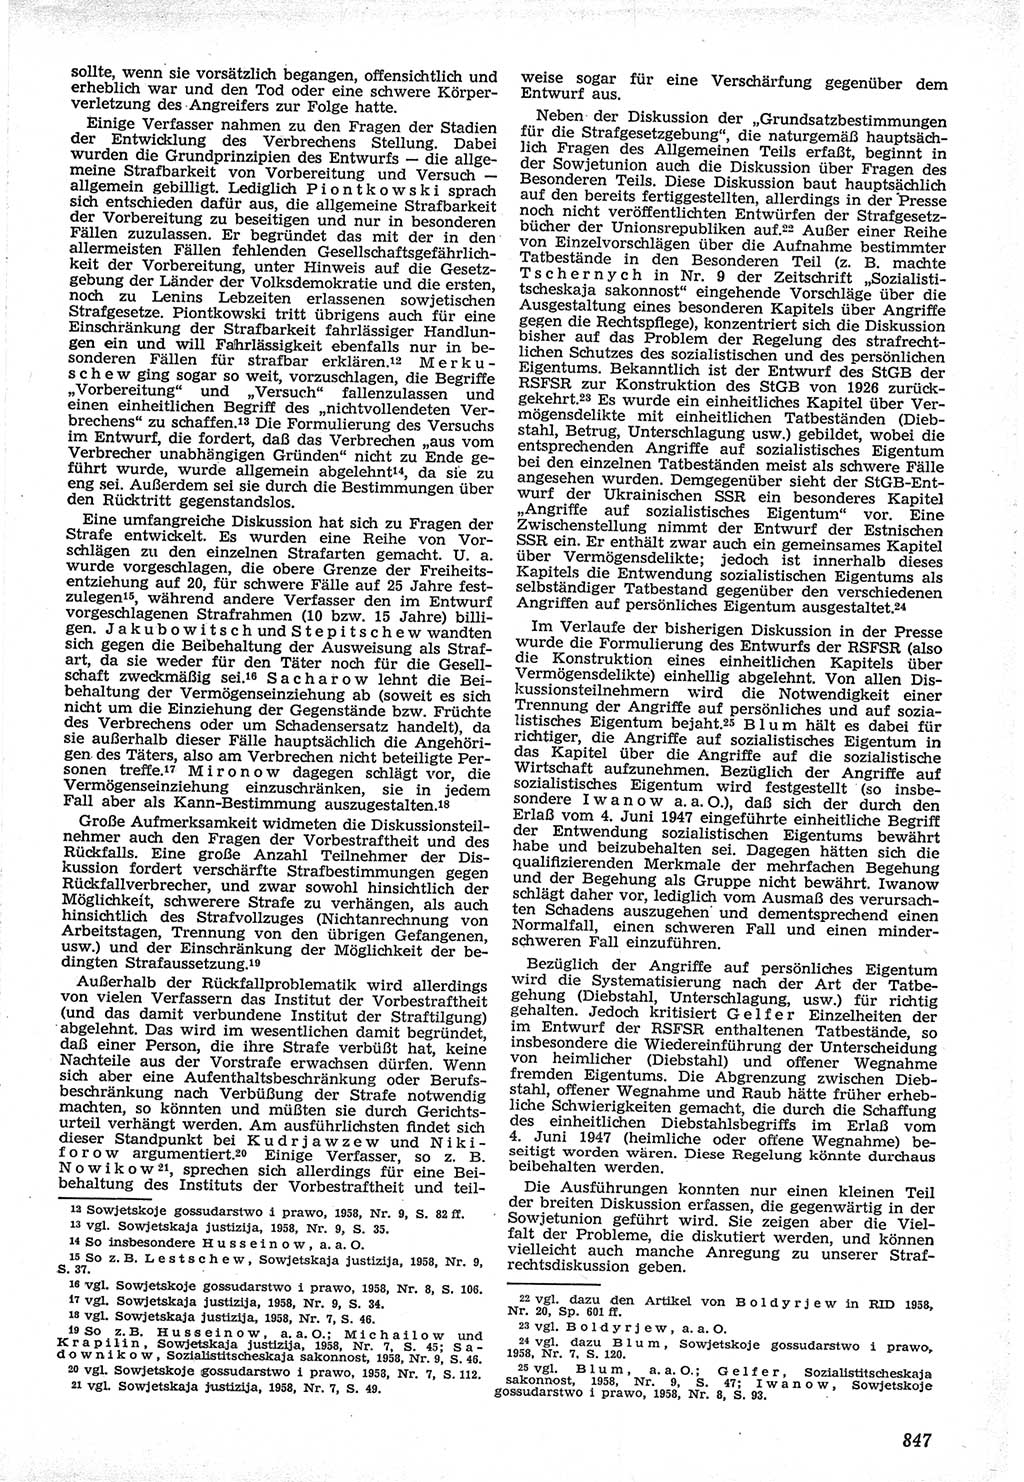 Neue Justiz (NJ), Zeitschrift für Recht und Rechtswissenschaft [Deutsche Demokratische Republik (DDR)], 12. Jahrgang 1958, Seite 847 (NJ DDR 1958, S. 847)